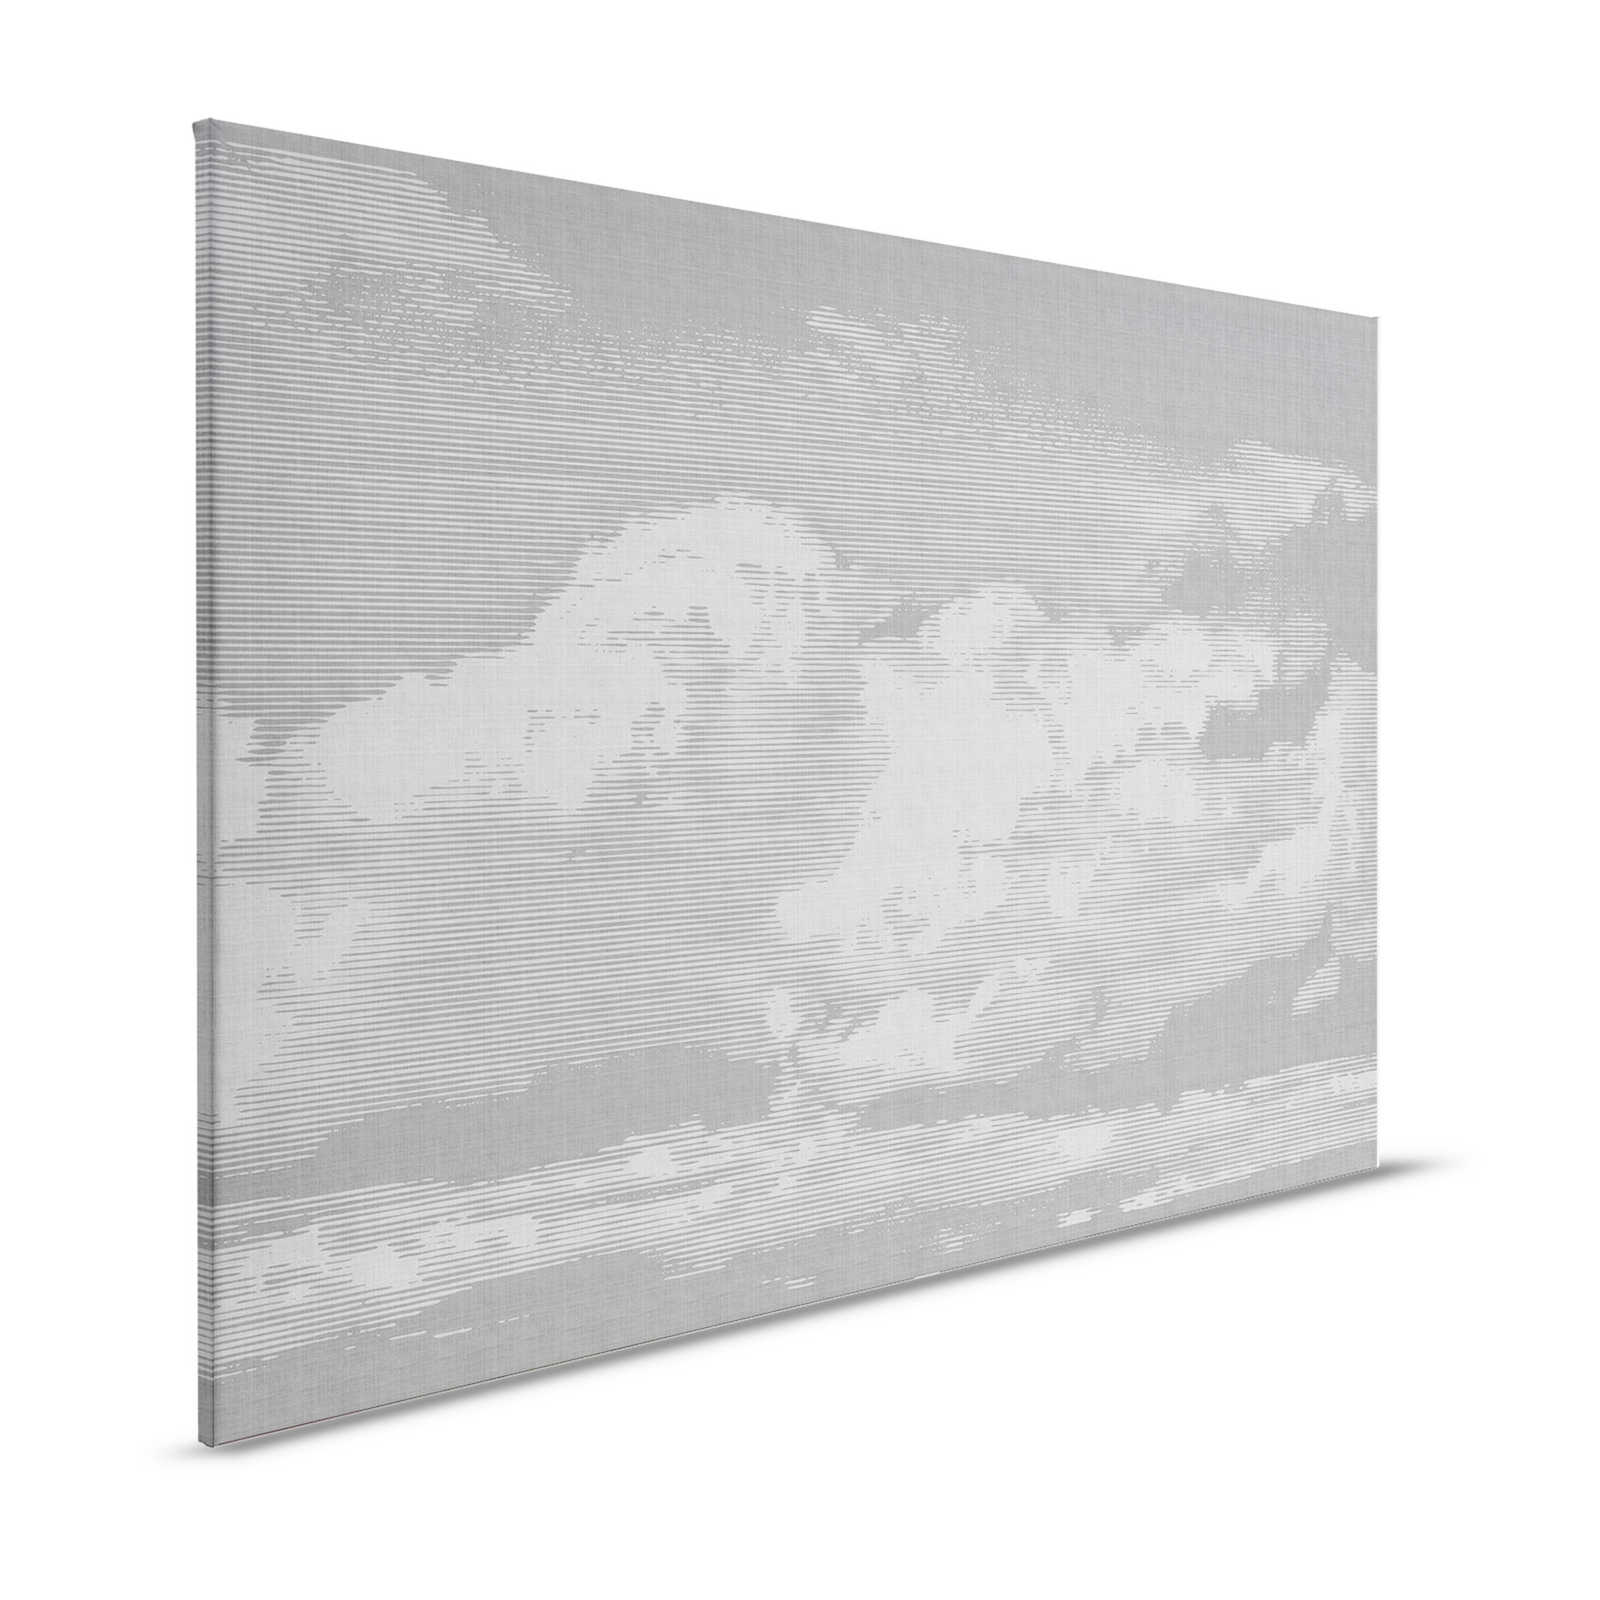 Clouds 2 - Hemels linnen doek met wolkenmotief - 1.20 m x 0.80 m
